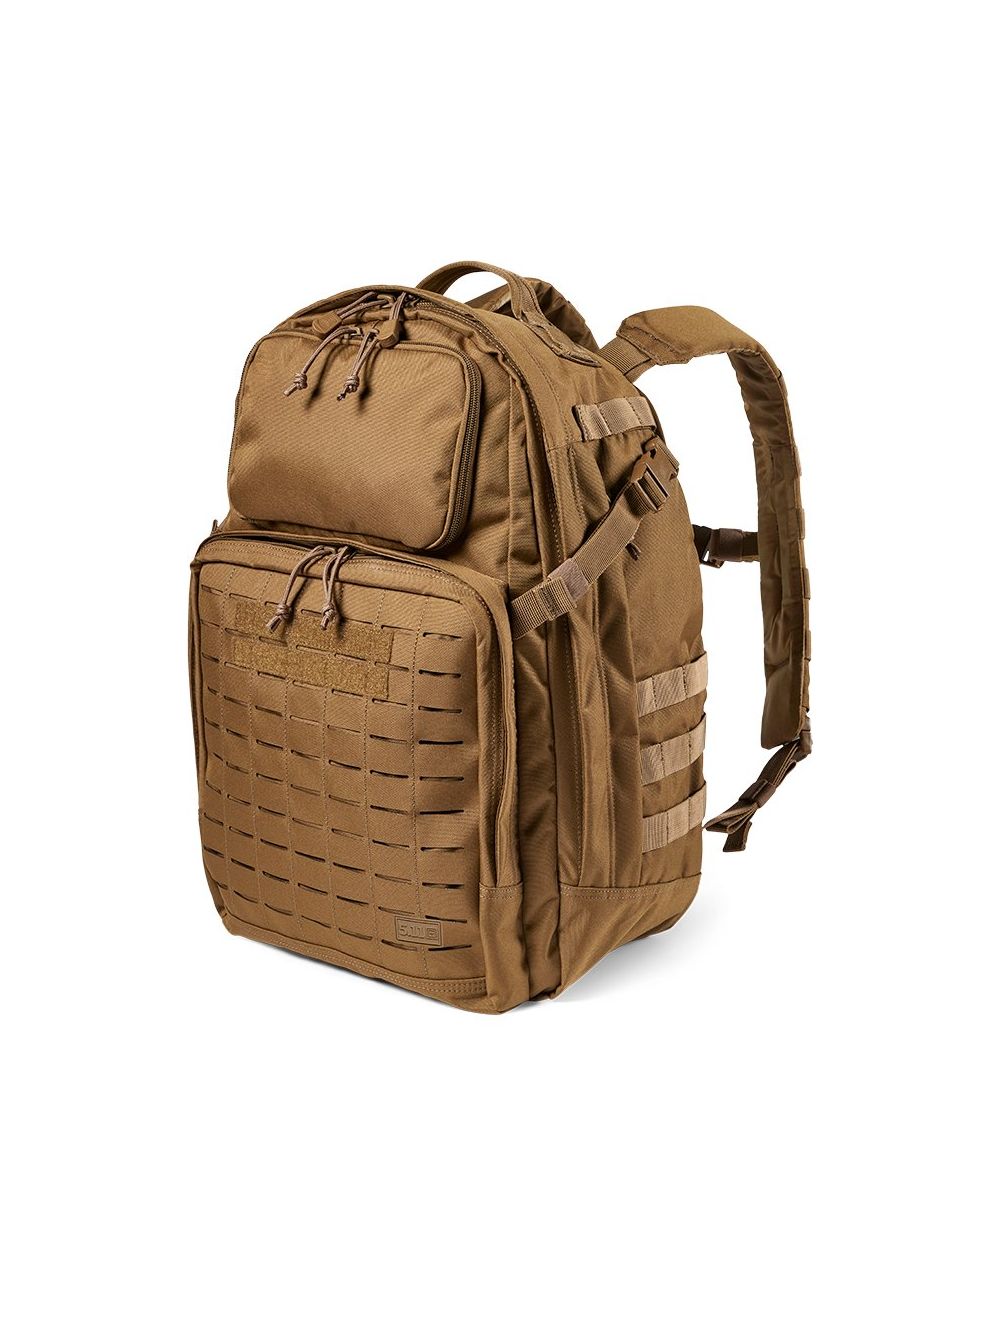 FAST-TAC 24 Backpack